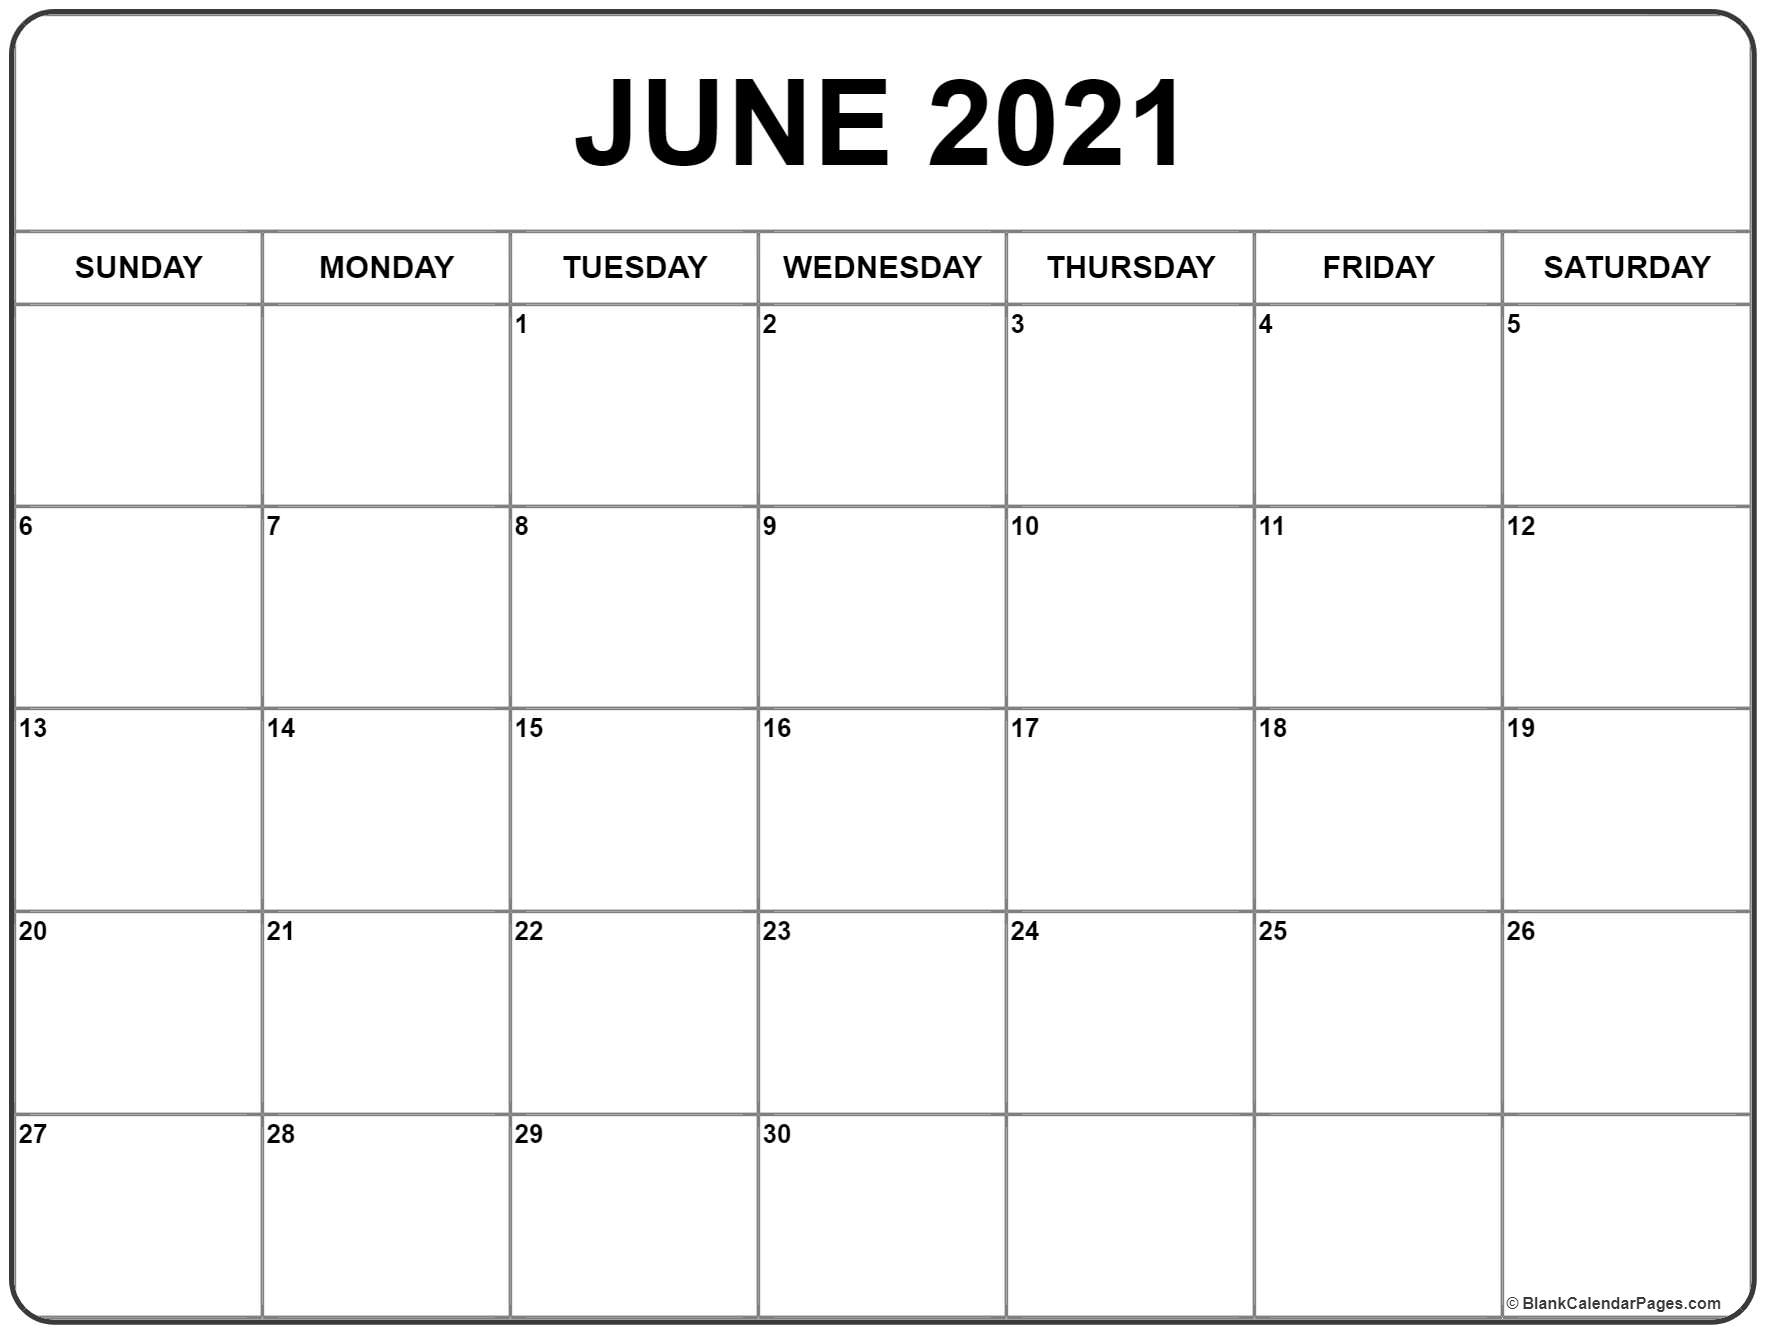 June 2021 Calendar | 51+ Calendar Templates Of 2021 Calendars Calendar From August 2020 To June 2021